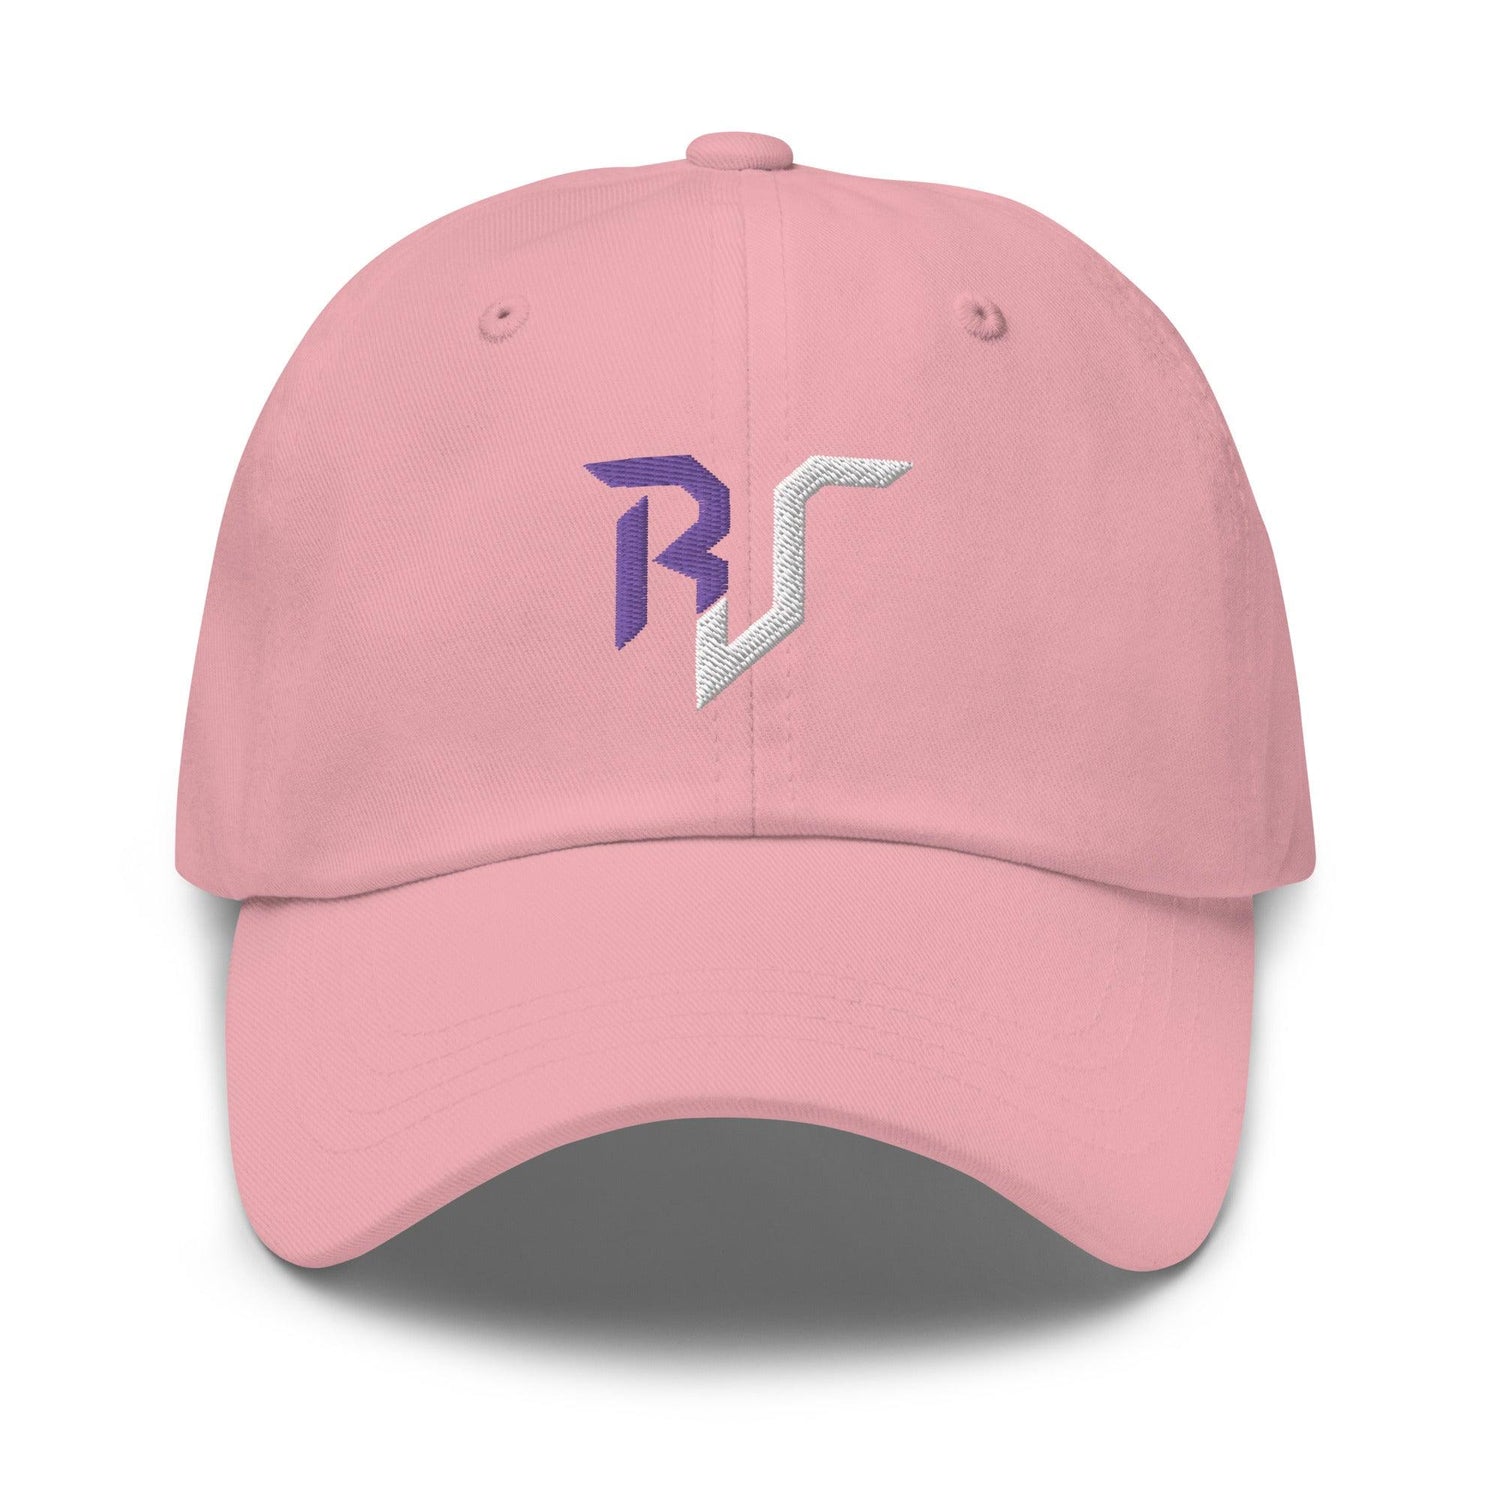 Russell Jones “RJ” hat - Fan Arch